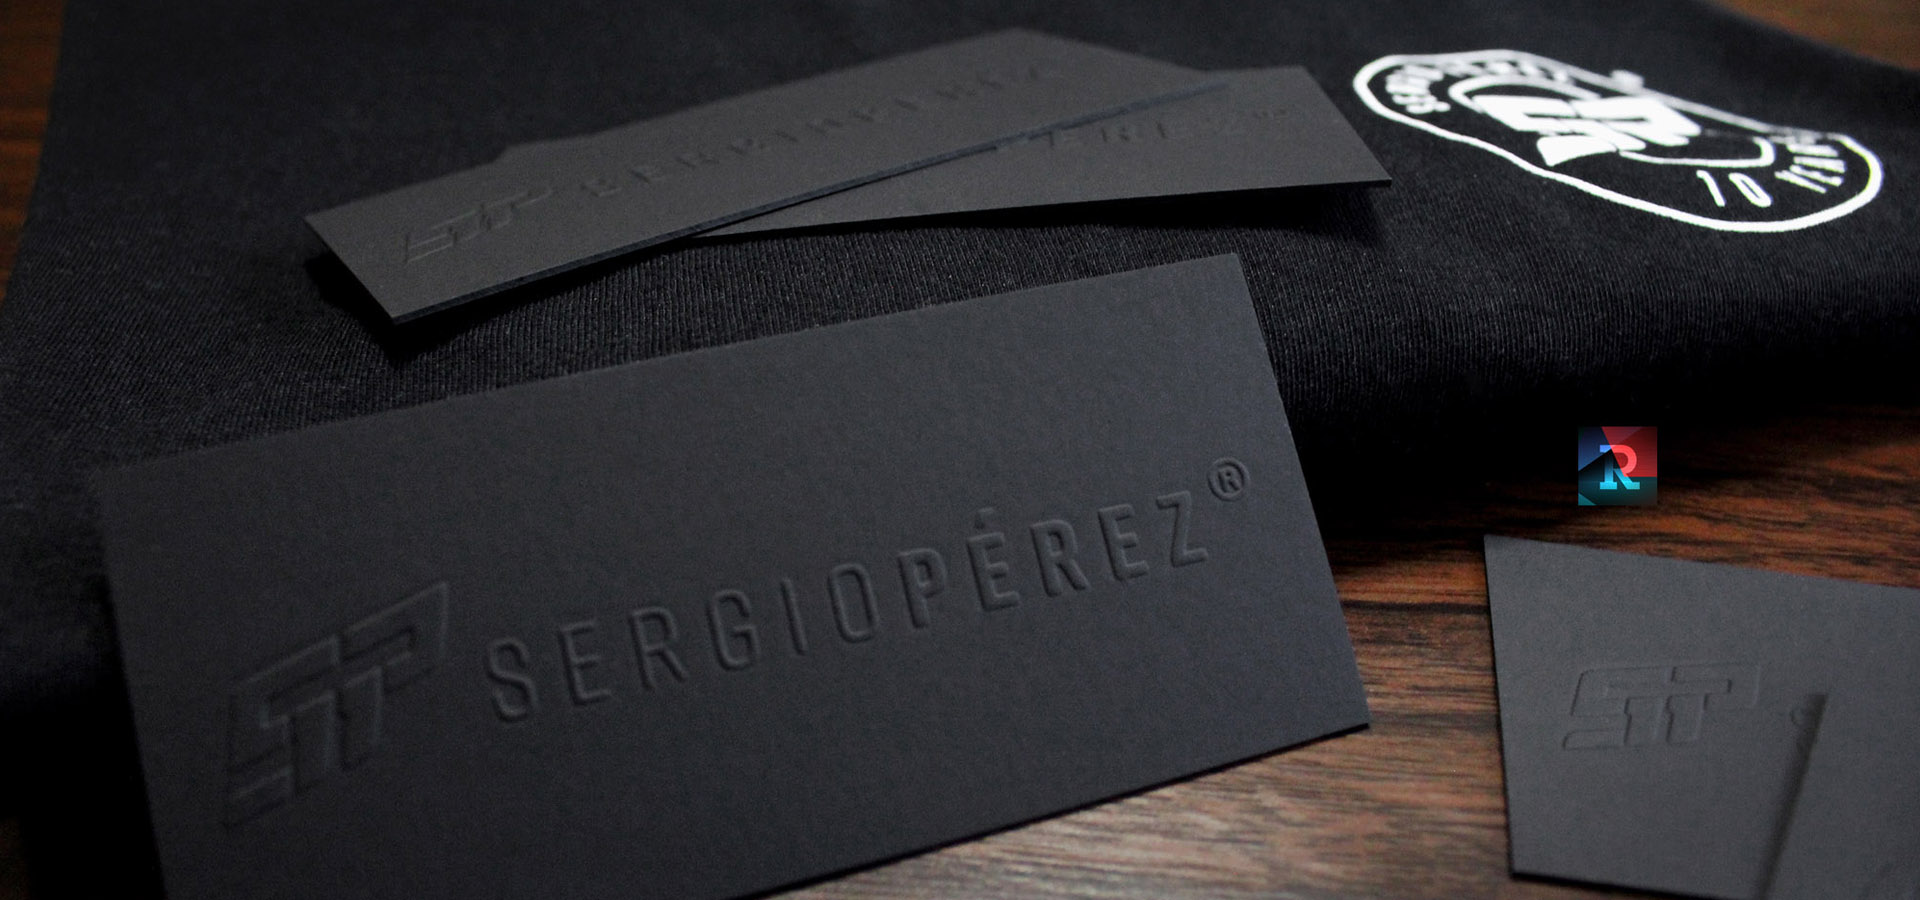 Merchandising SERGIO CHECO PEREZ